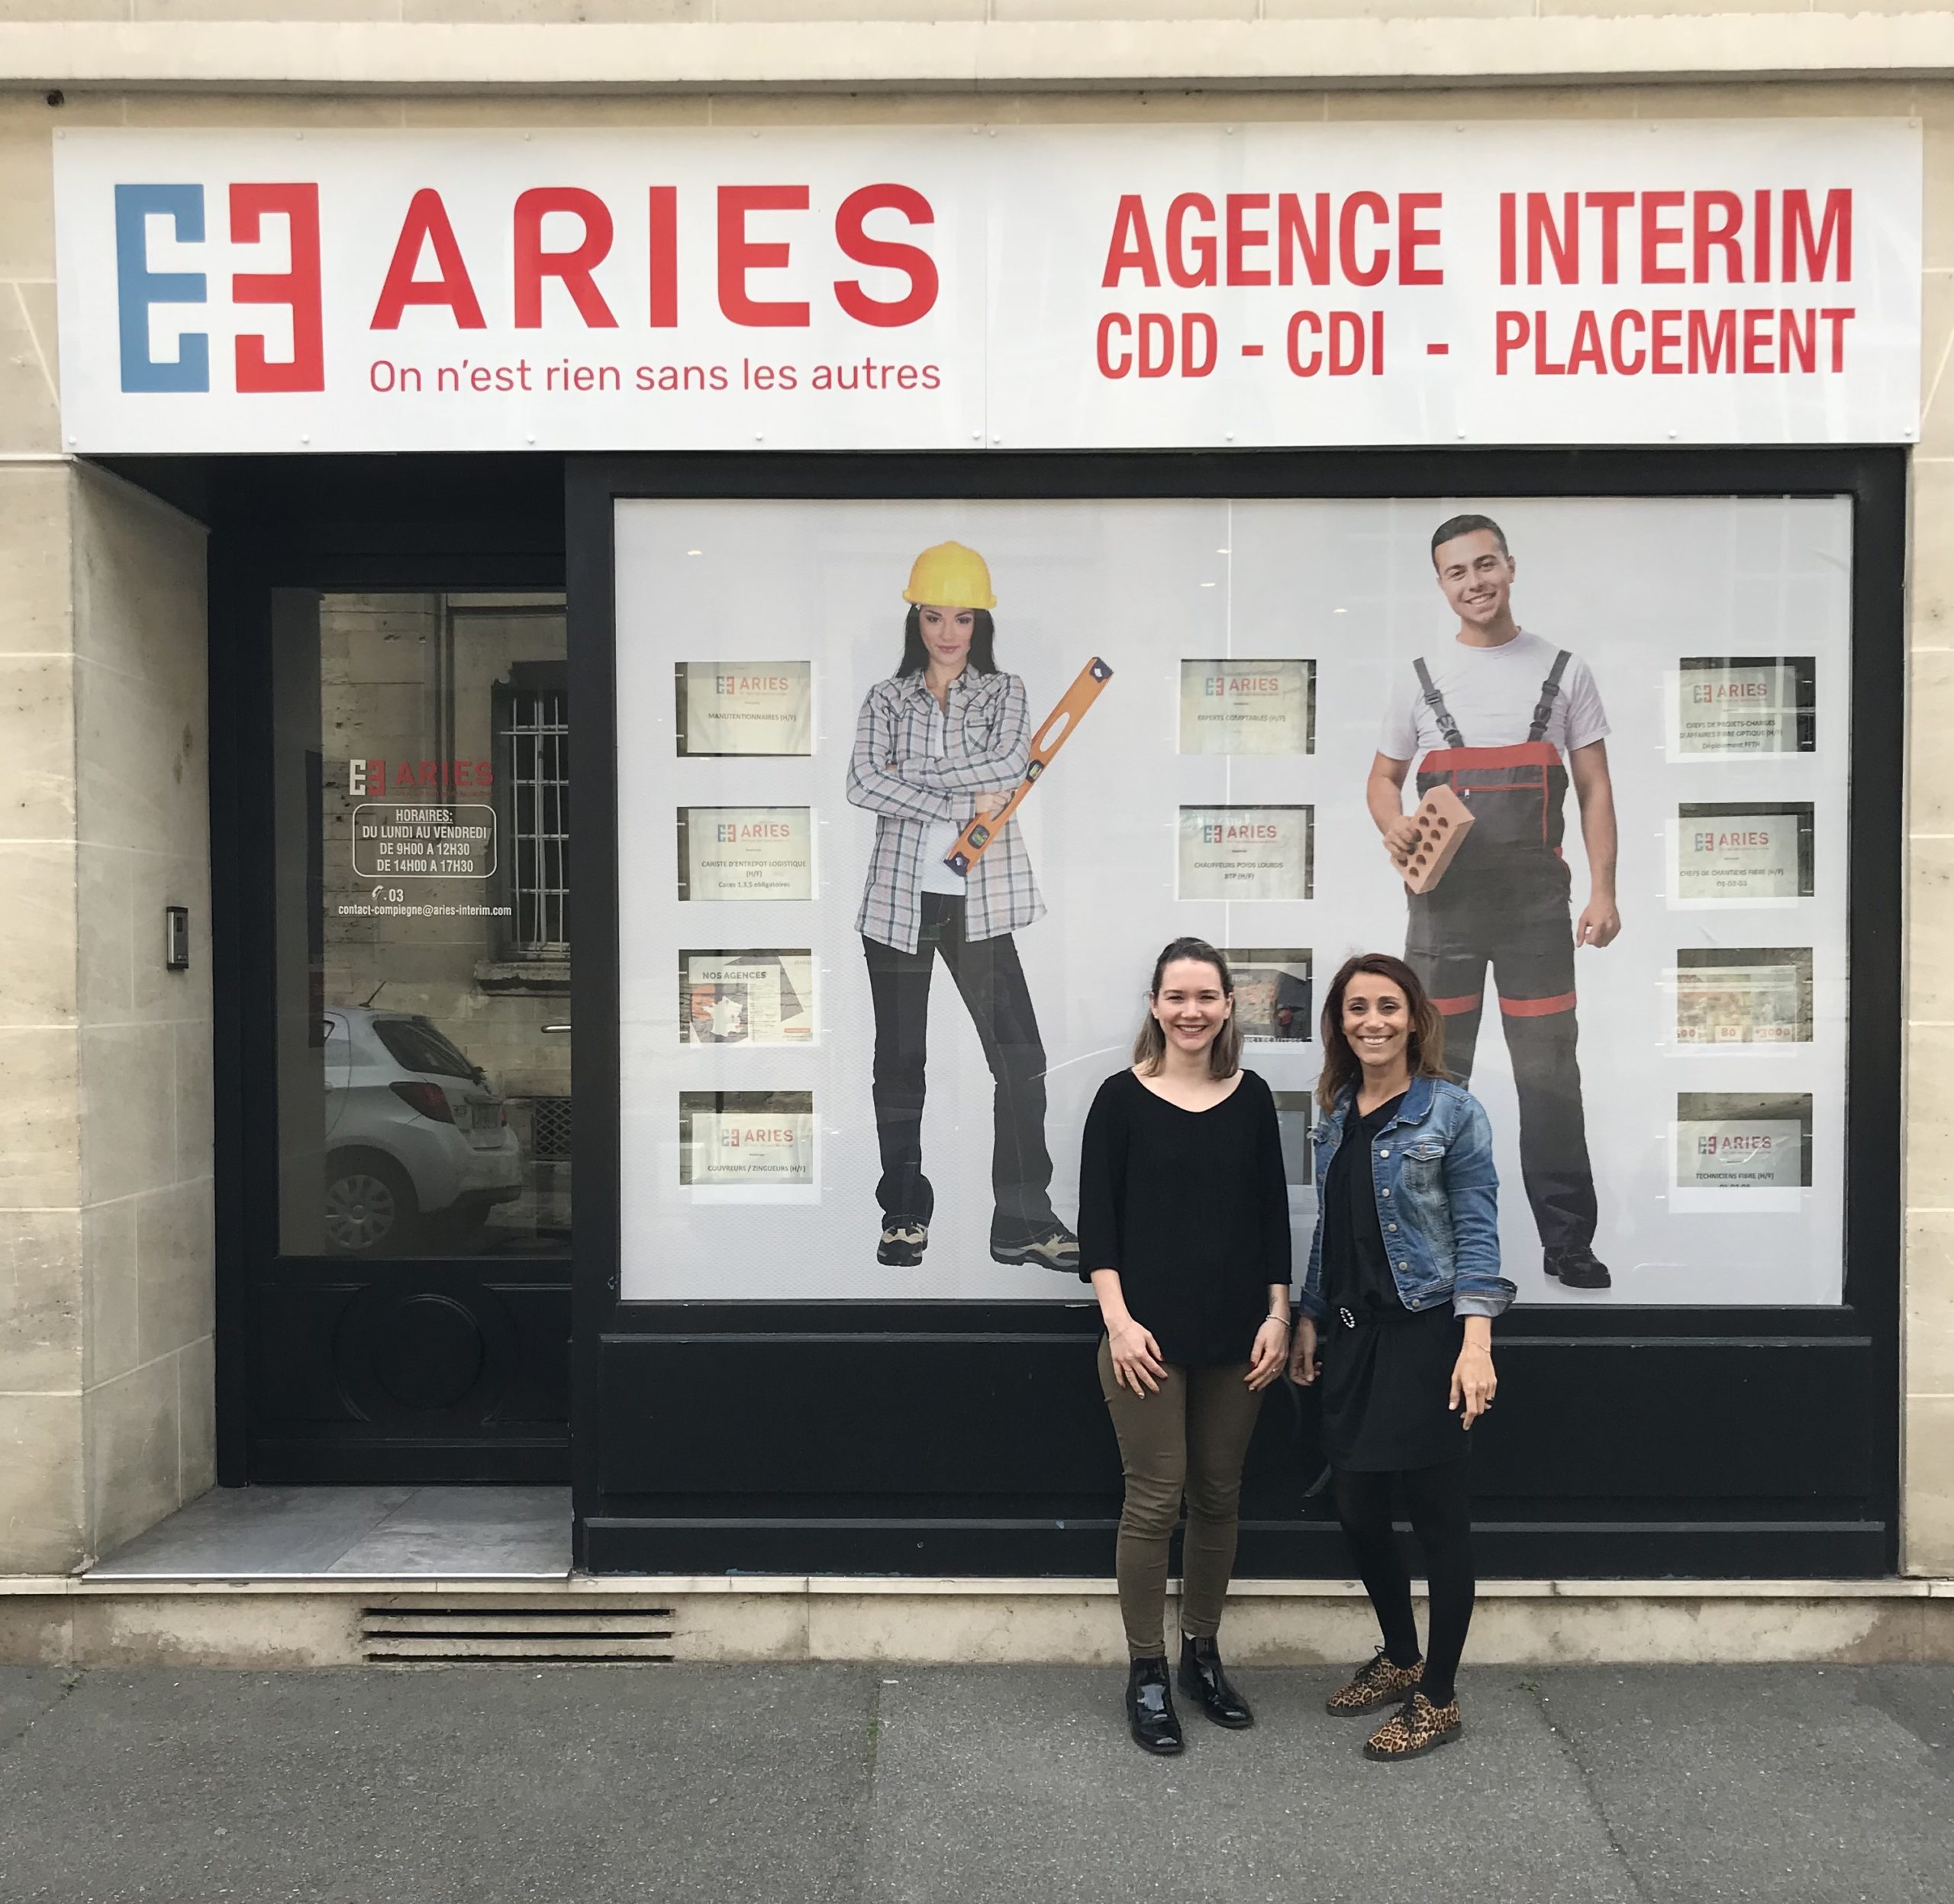 Aries interim Compiègne - équipe